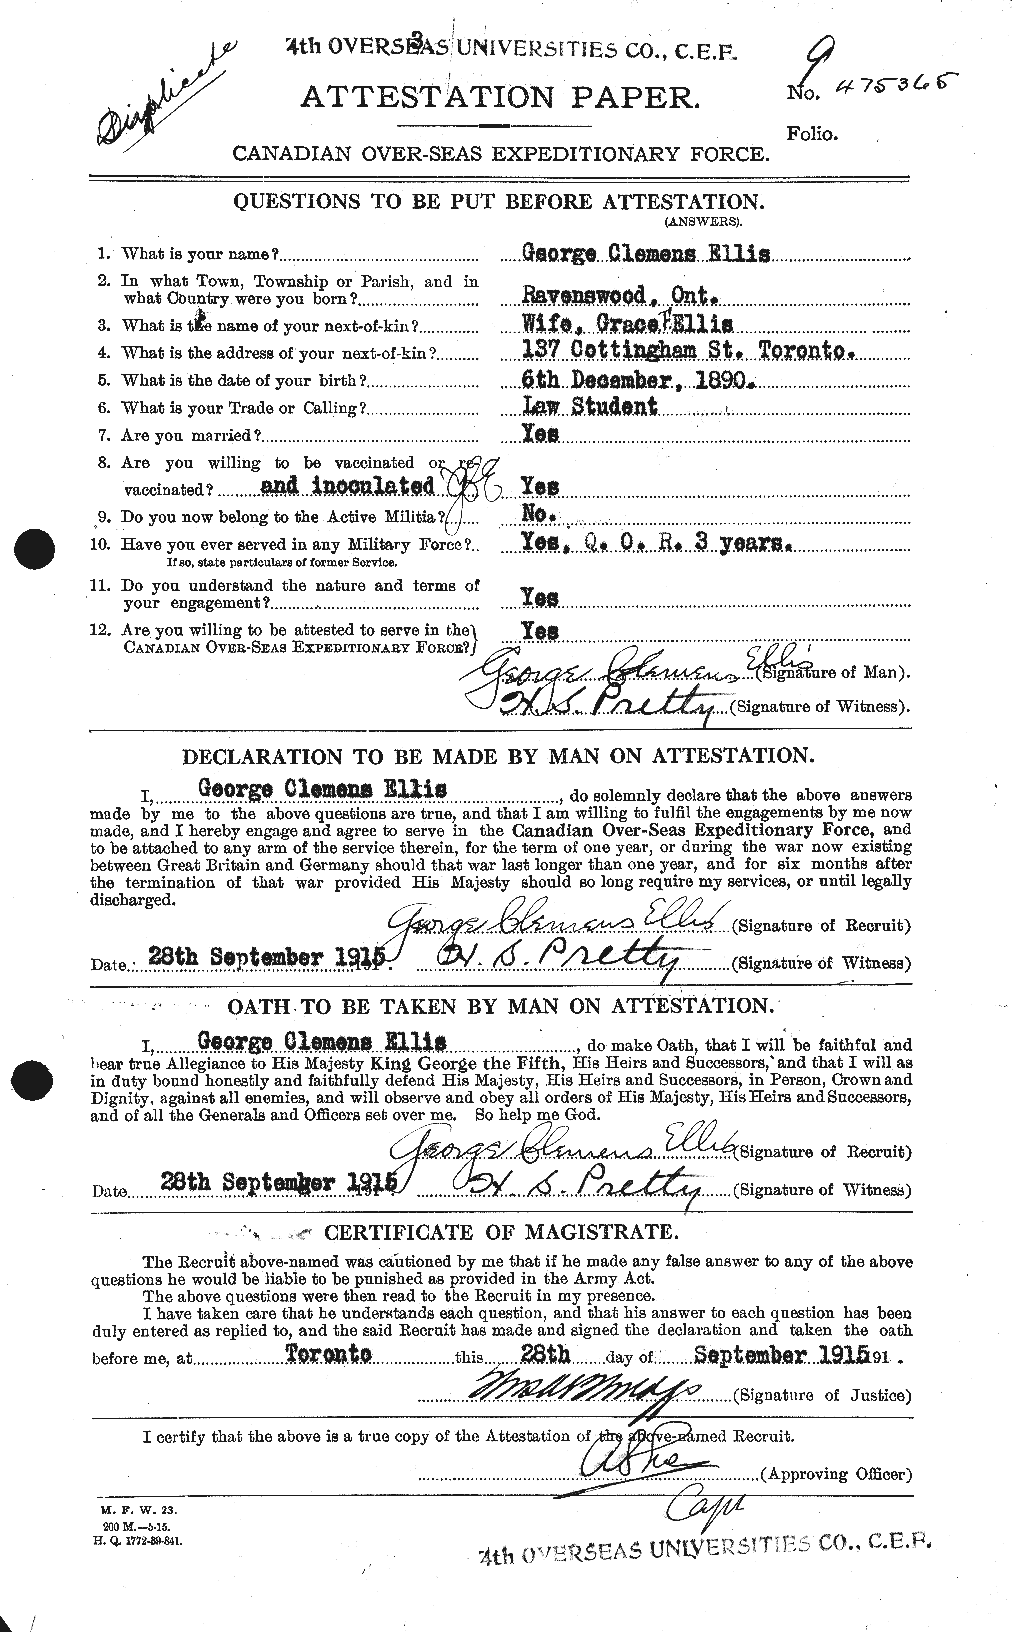 Dossiers du Personnel de la Première Guerre mondiale - CEC 311894a